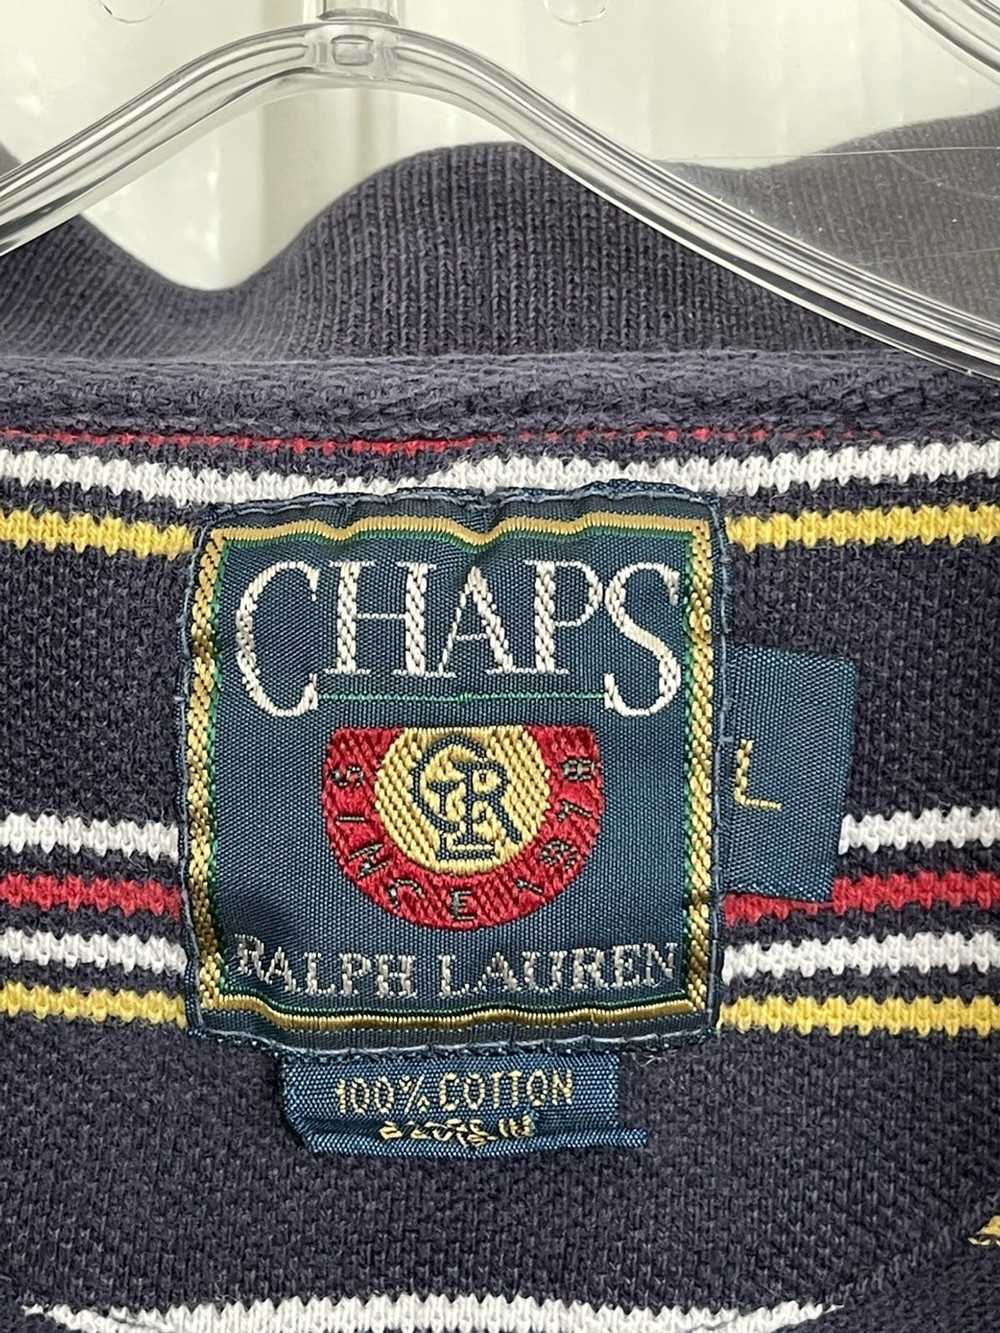 Chaps Ralph Lauren × Ralph Lauren × Vintage Vinta… - image 4